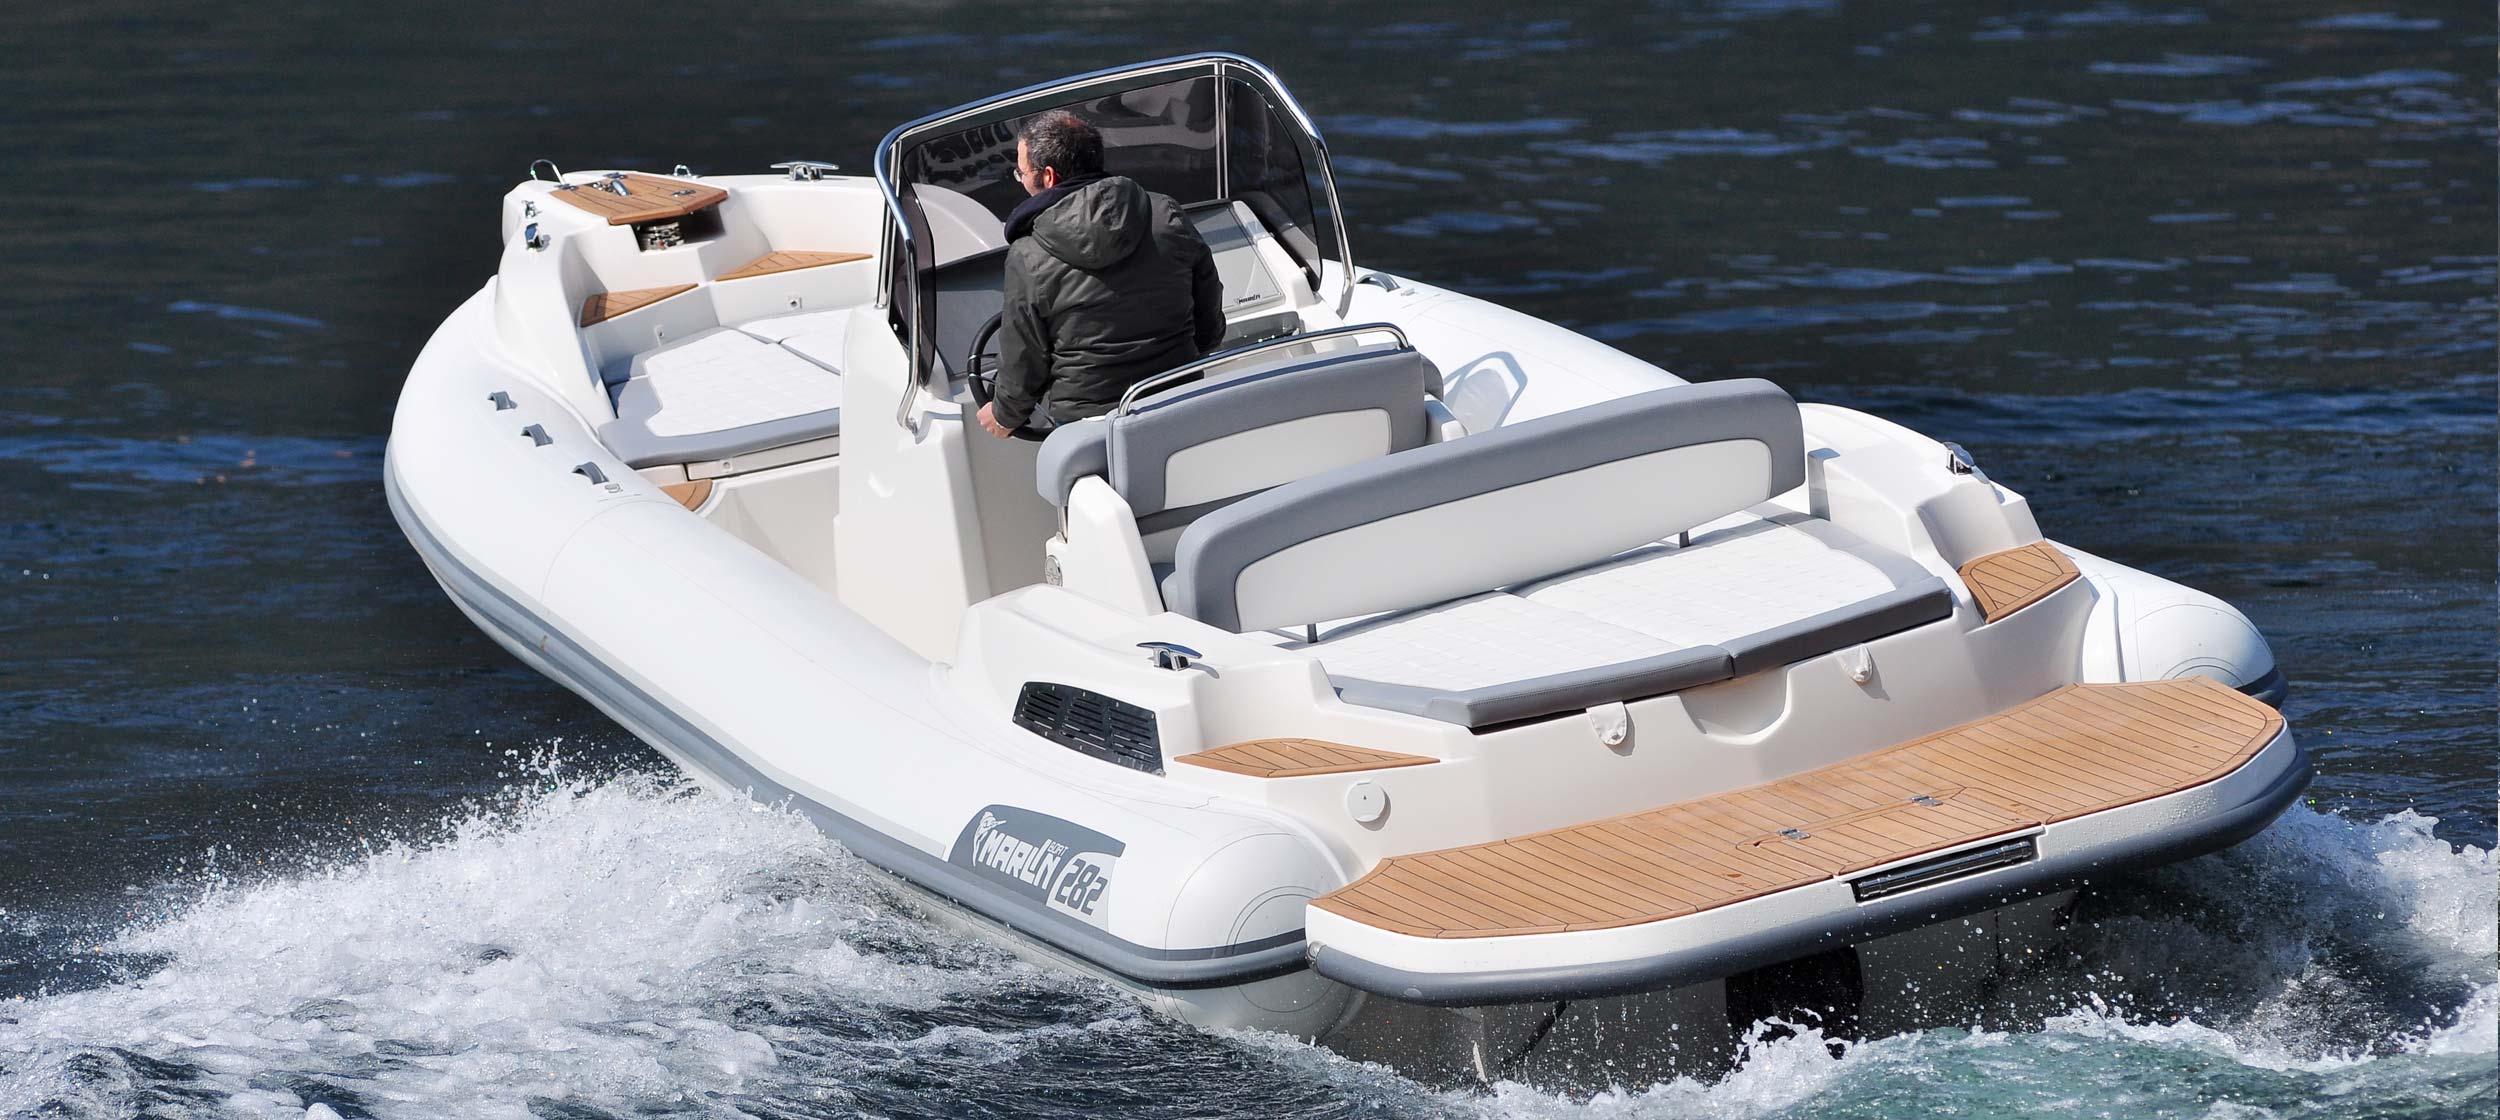 Marlin Boat - Gommone Fuoribordo Modello 282